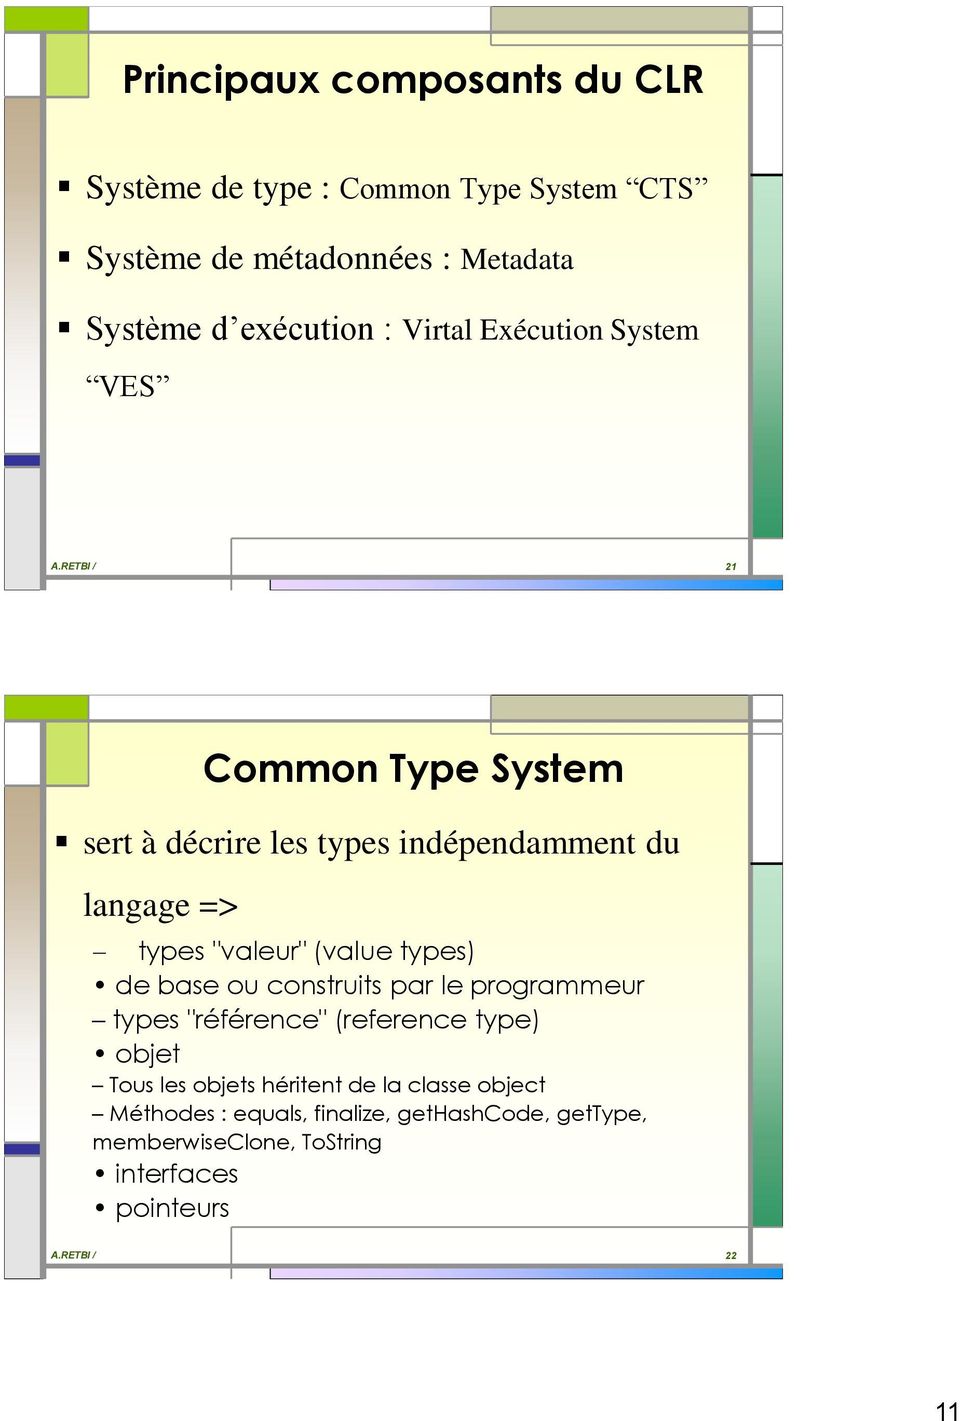 RETBI / 21 Common Type System sert à décrire les types indépendamment du langage => types "valeur" (value types) de base ou